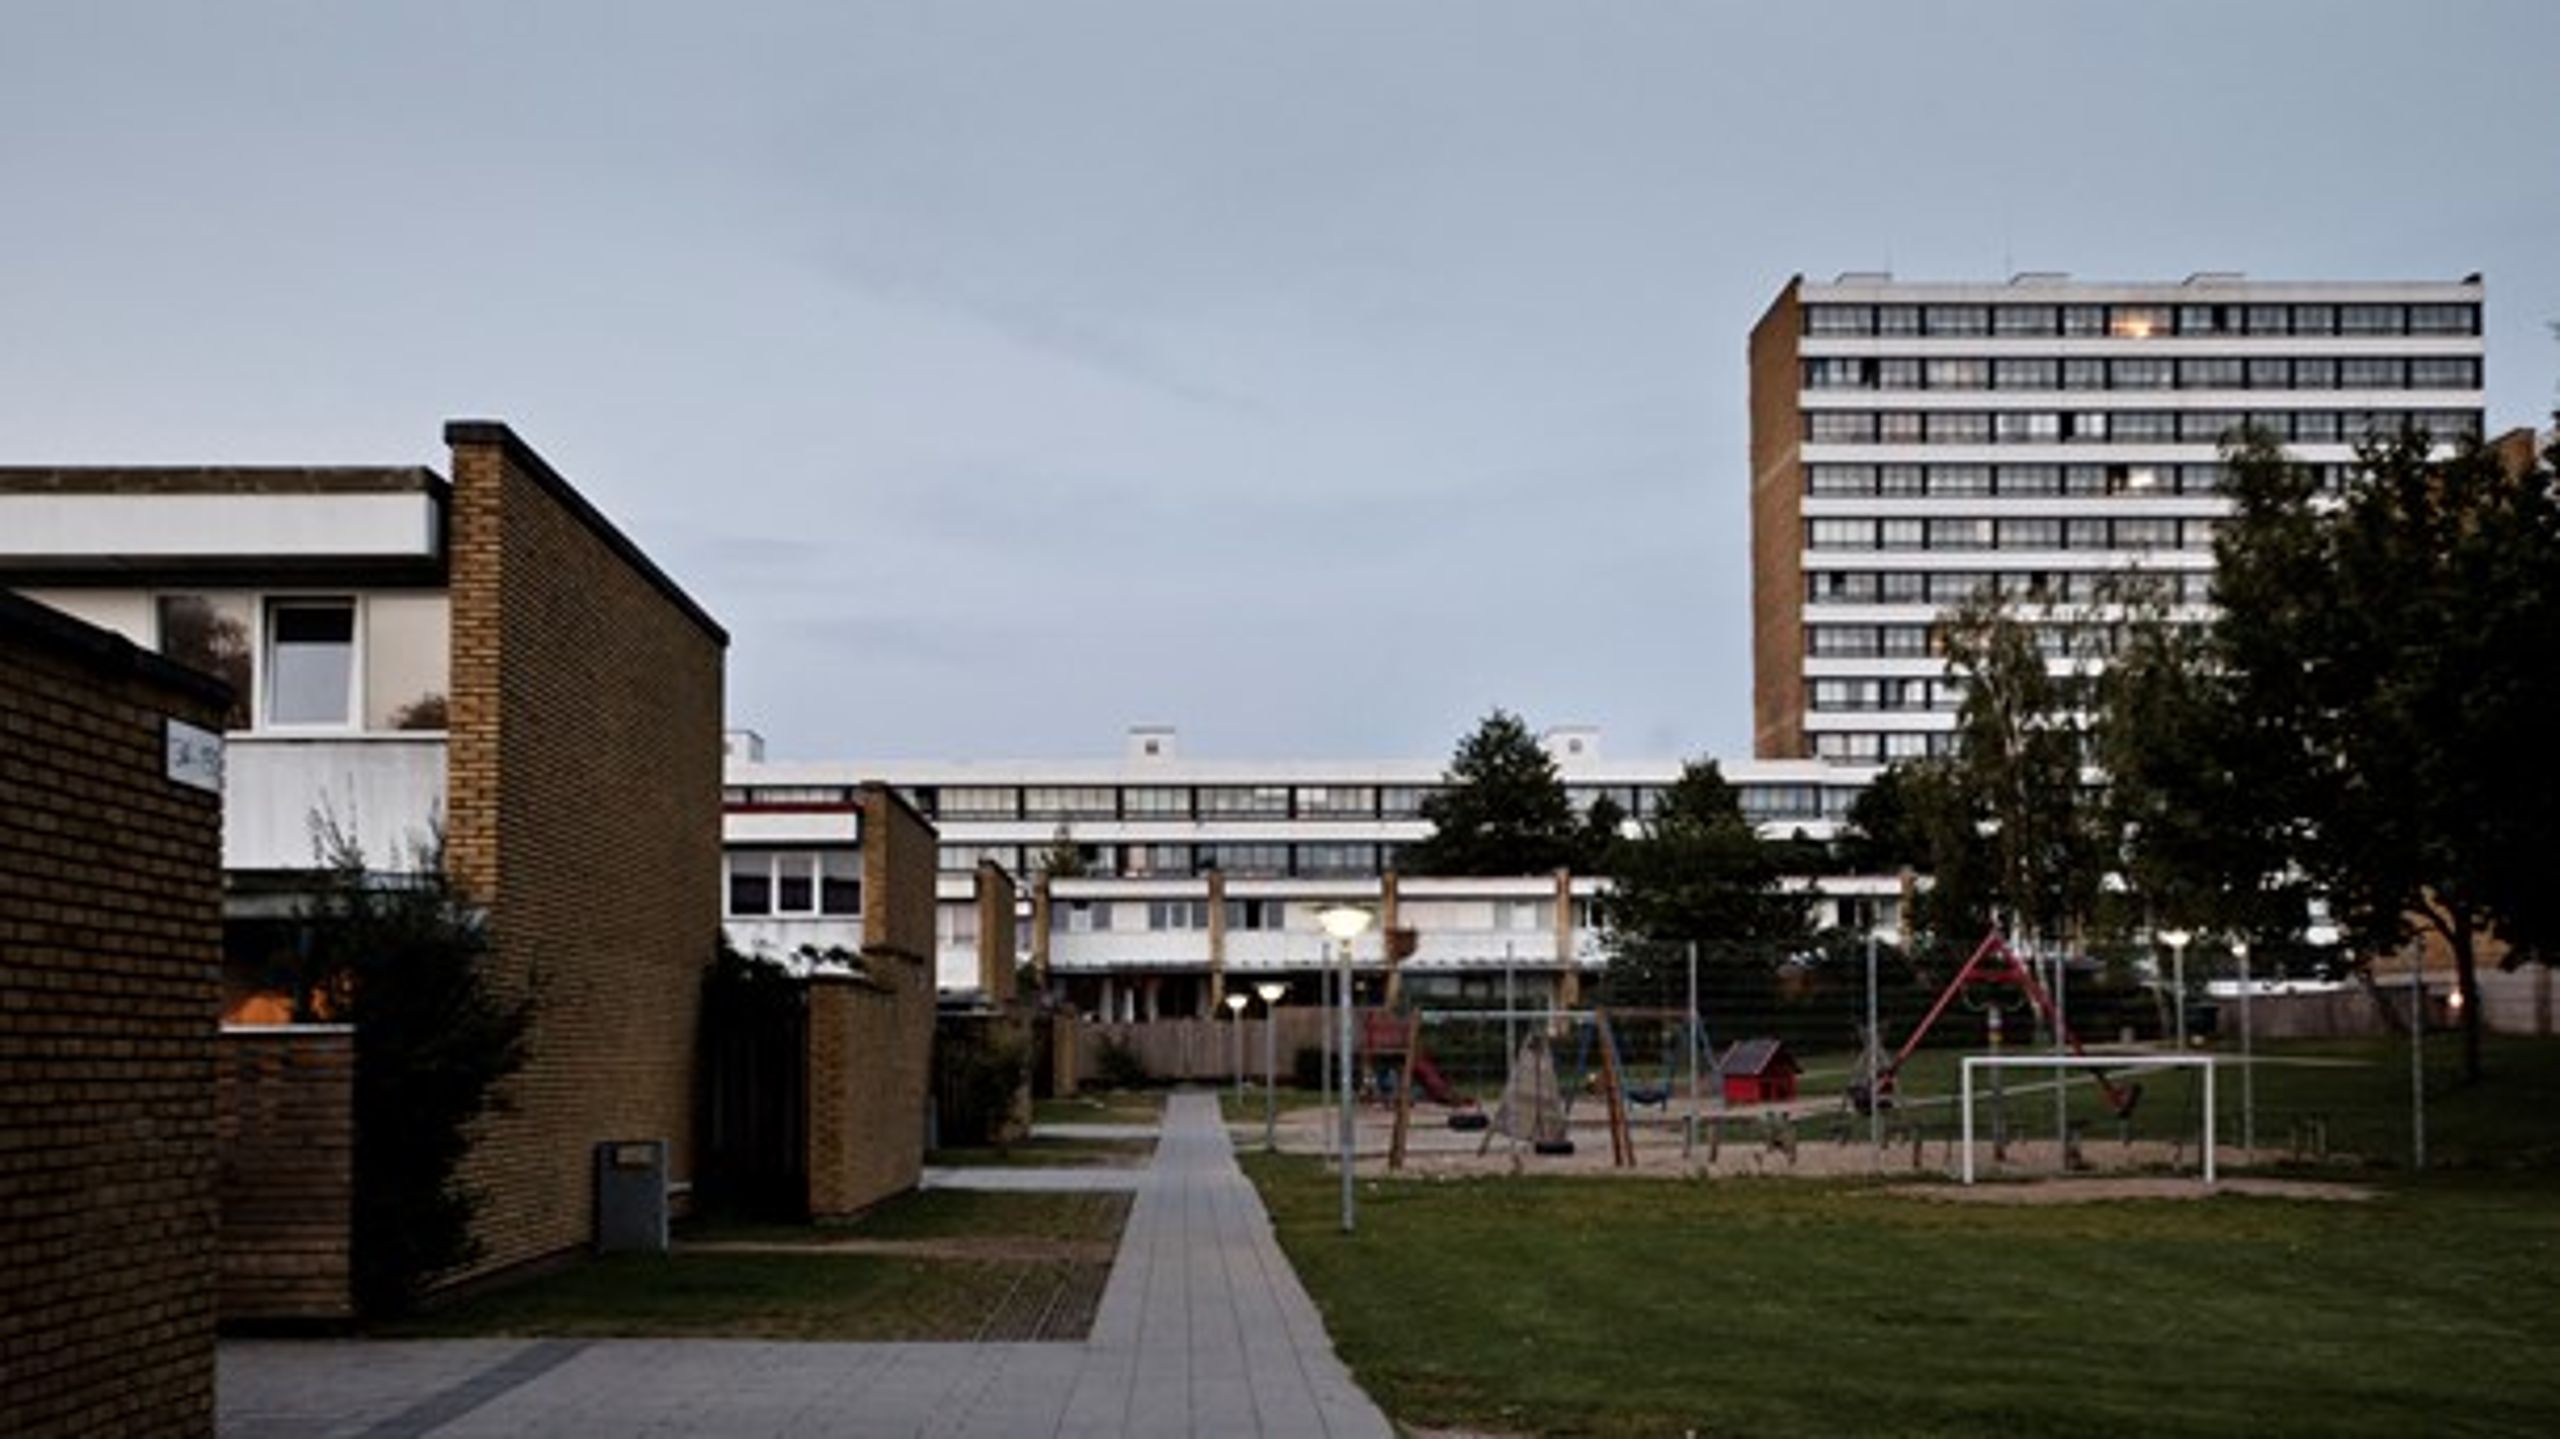 Regeringen handler mod bedre vidende i ny ghettoplan, skriver forskere fra Roskilde Universitet.